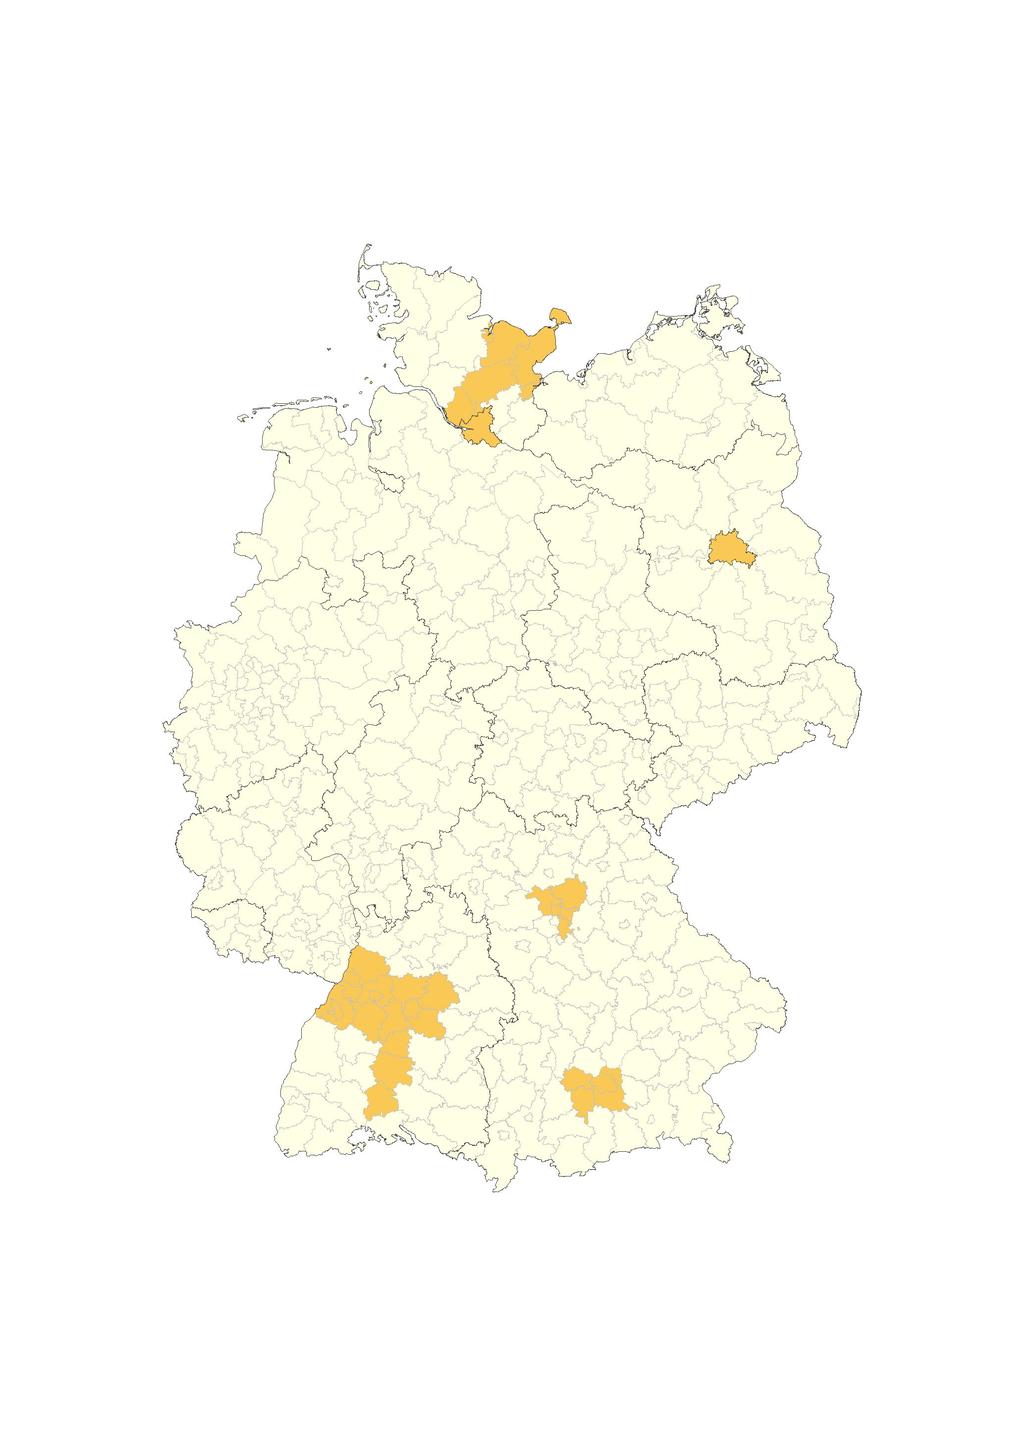 Prognos Zukunftsatlas 2006: Der Clusteratlas identifiziert die Region Hamburg,